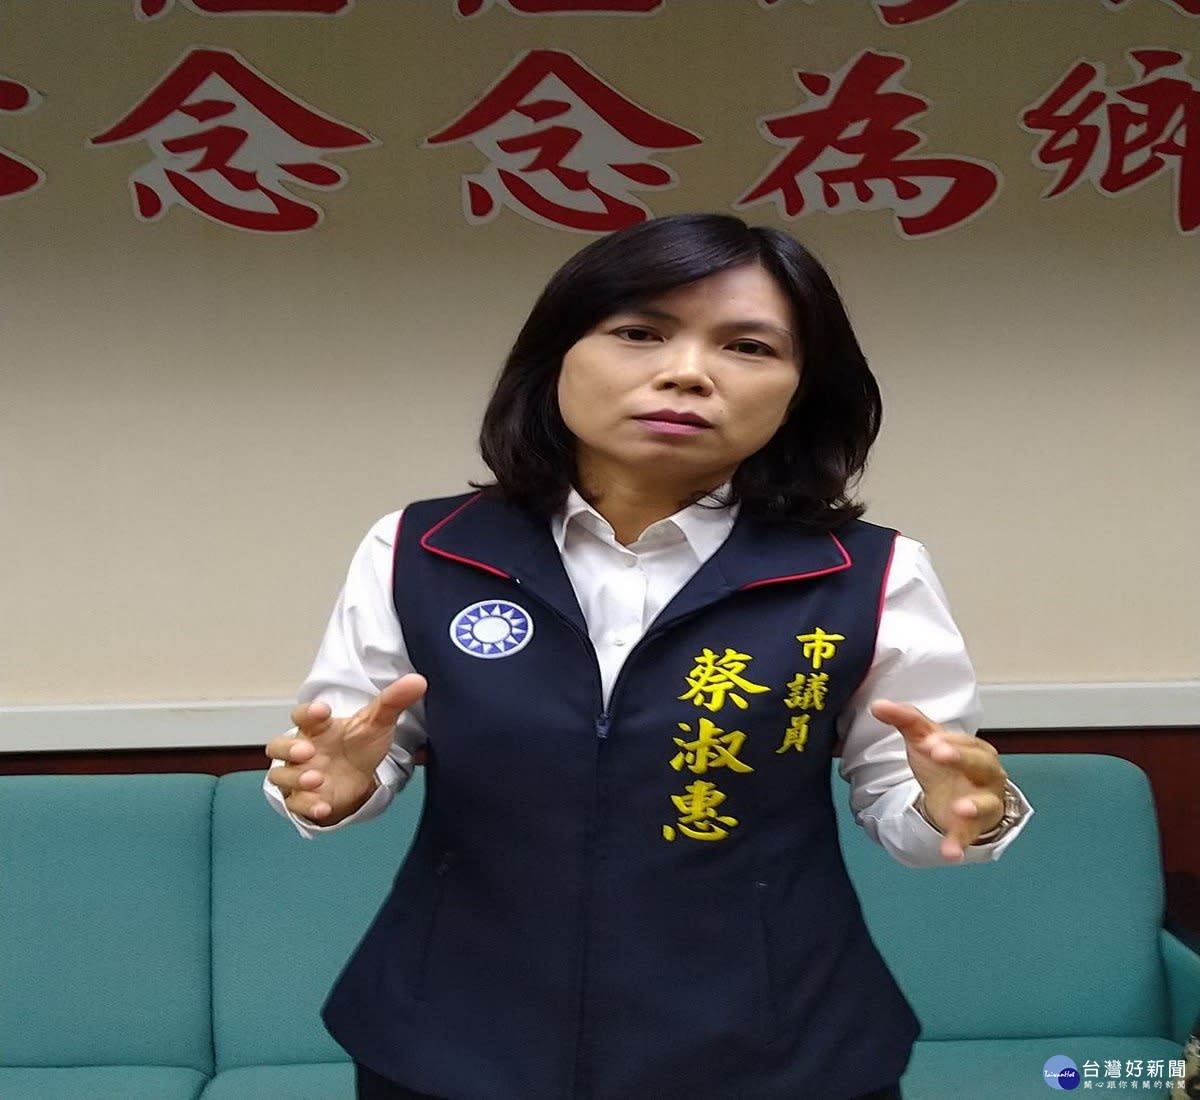 台南人口連續7個月負成長 市議員蔡淑惠呼籲政府提出對策 - Yahoo奇